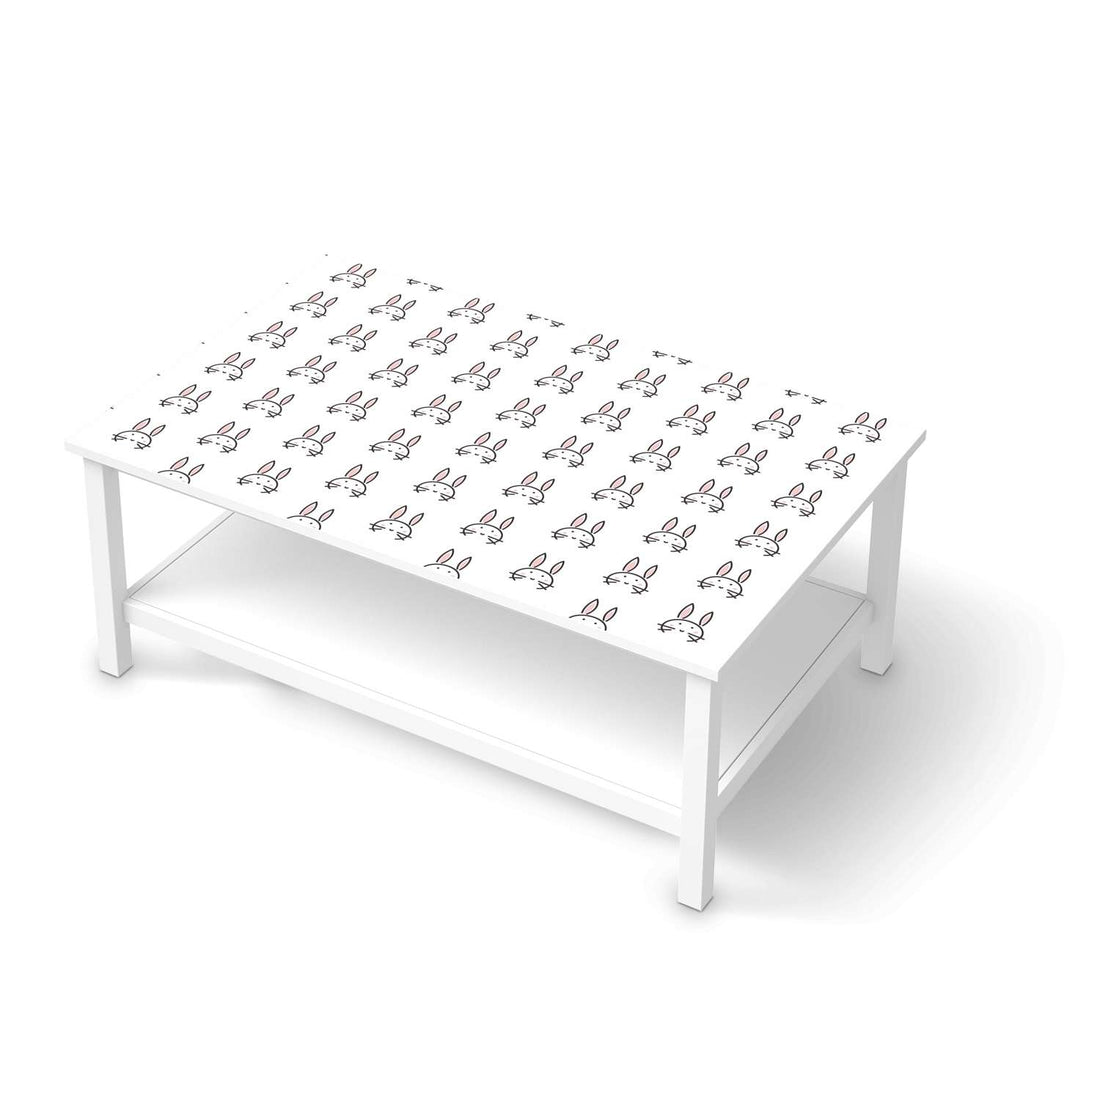 Möbelfolie Hoppel - IKEA Hemnes Couchtisch 118x75 cm  - weiss